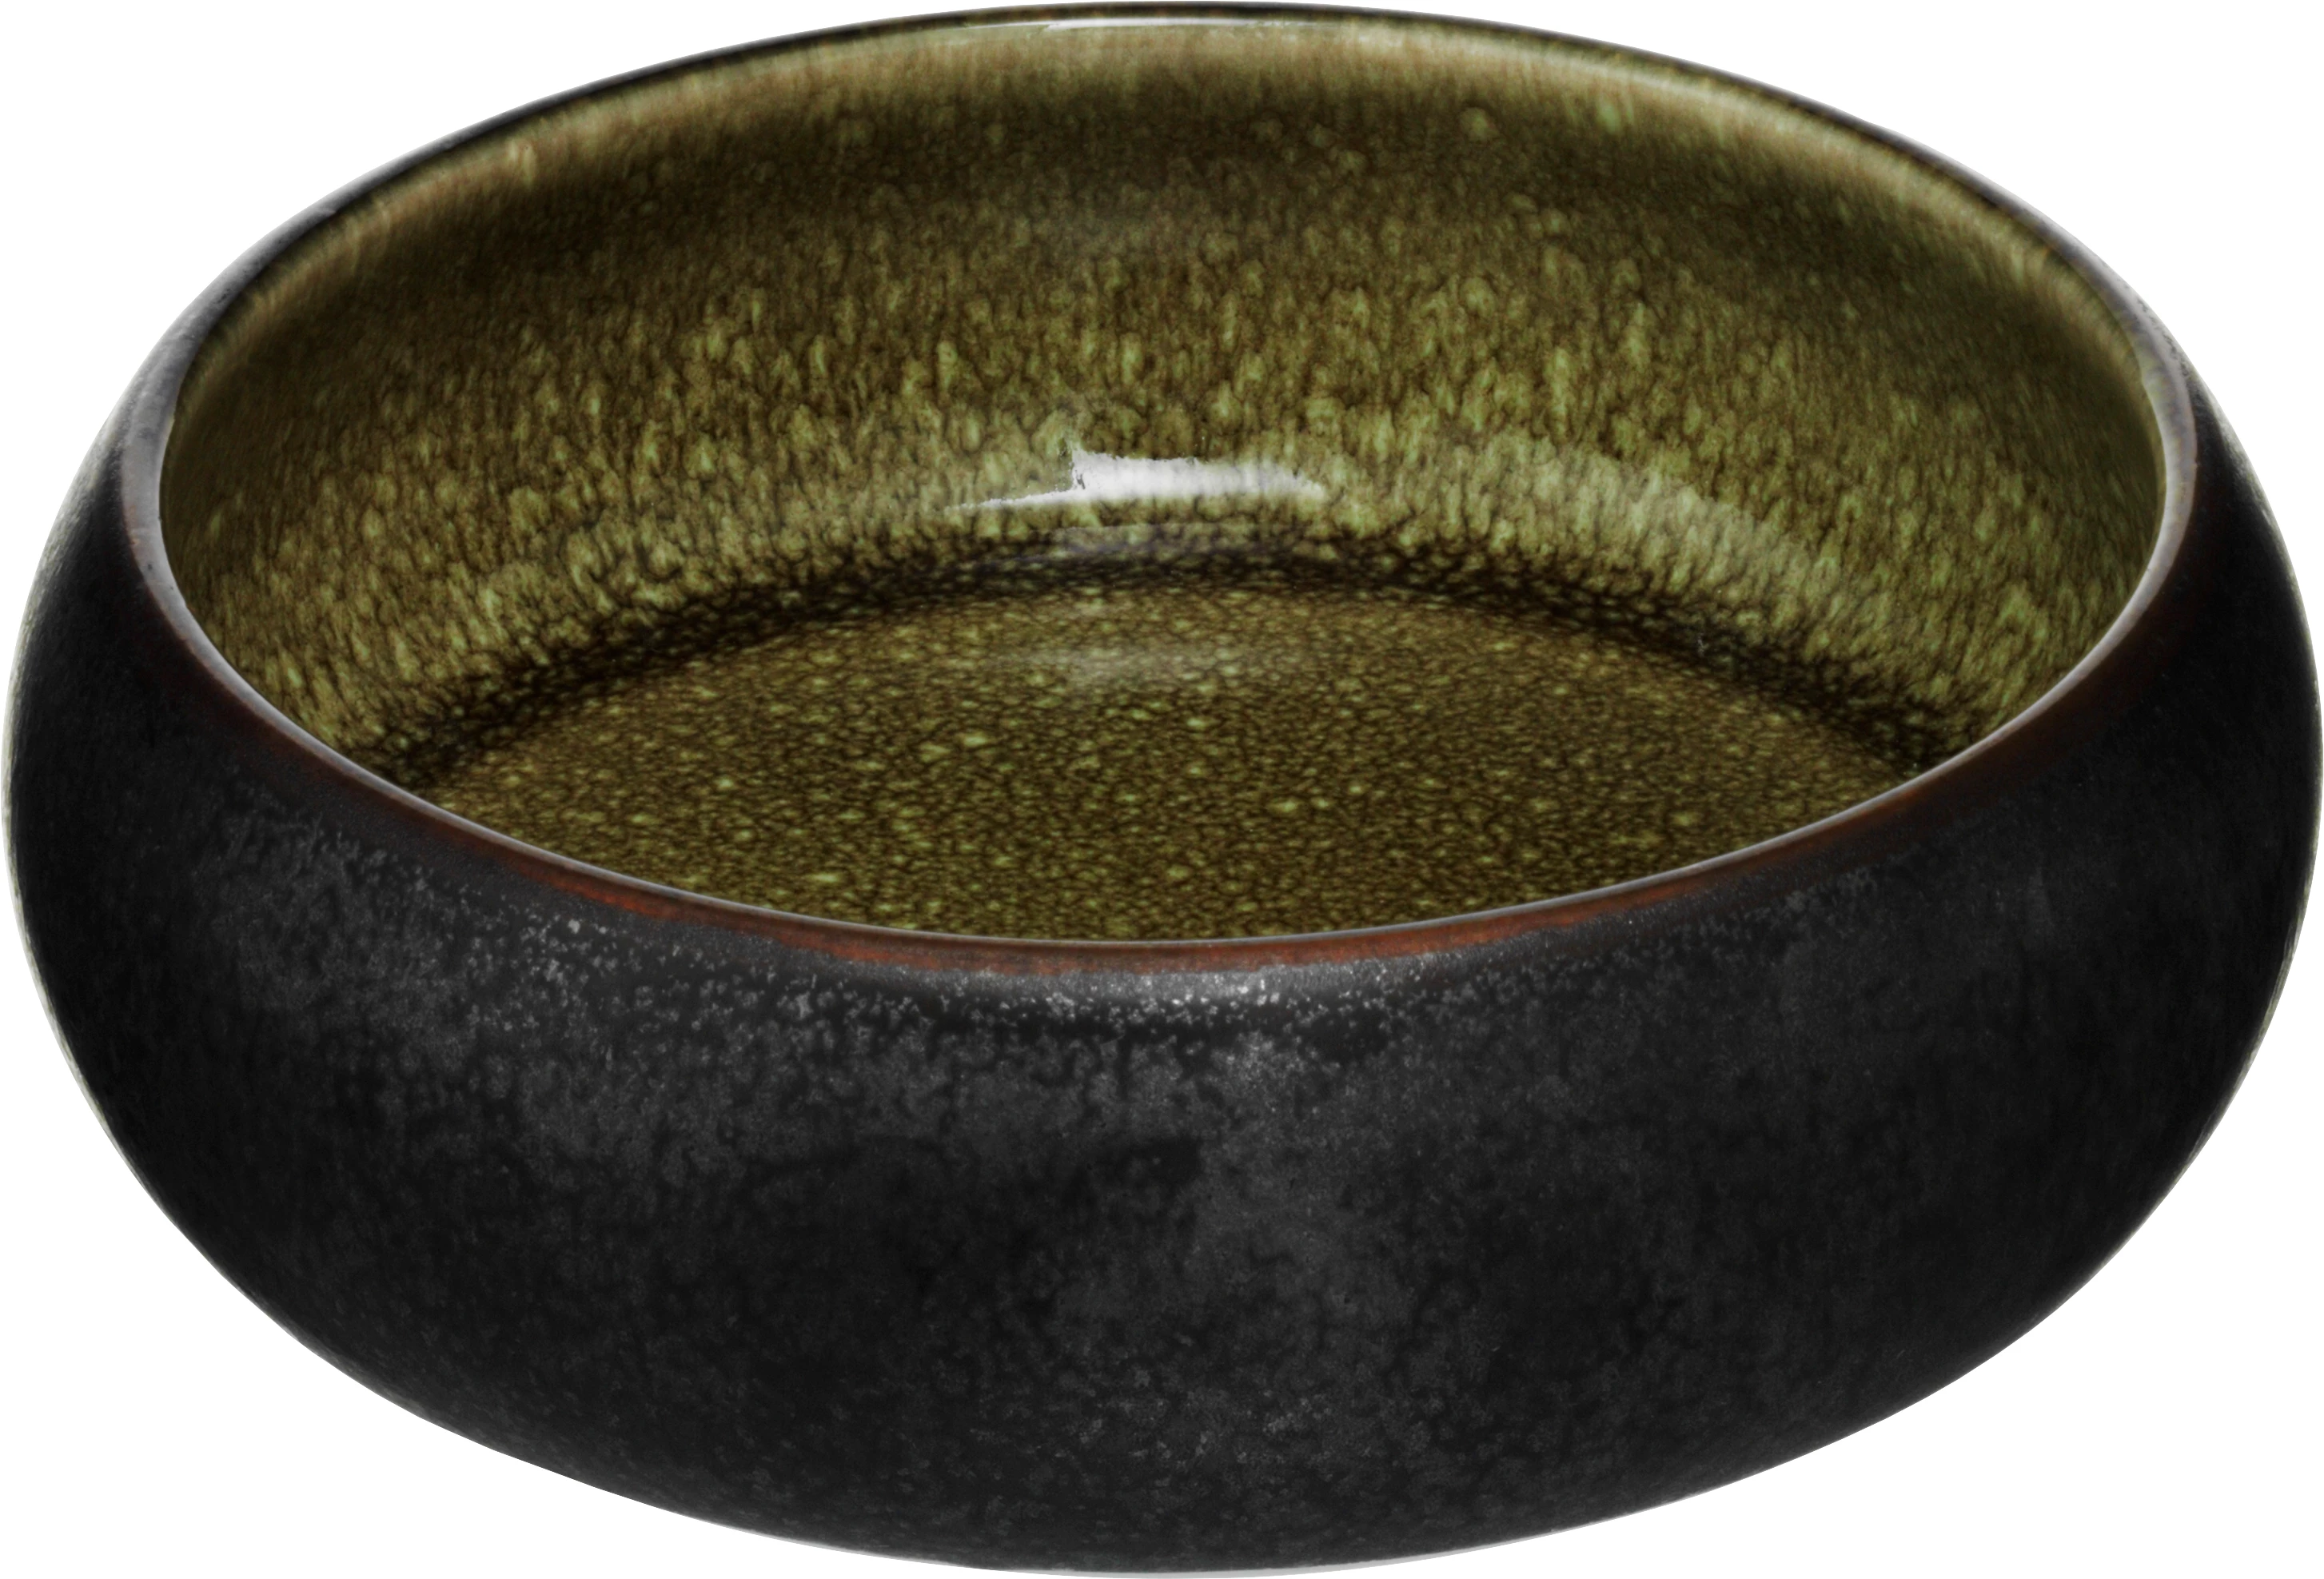 Eclipse skål, sort/oliven, 50 cl, ø16,5 cm